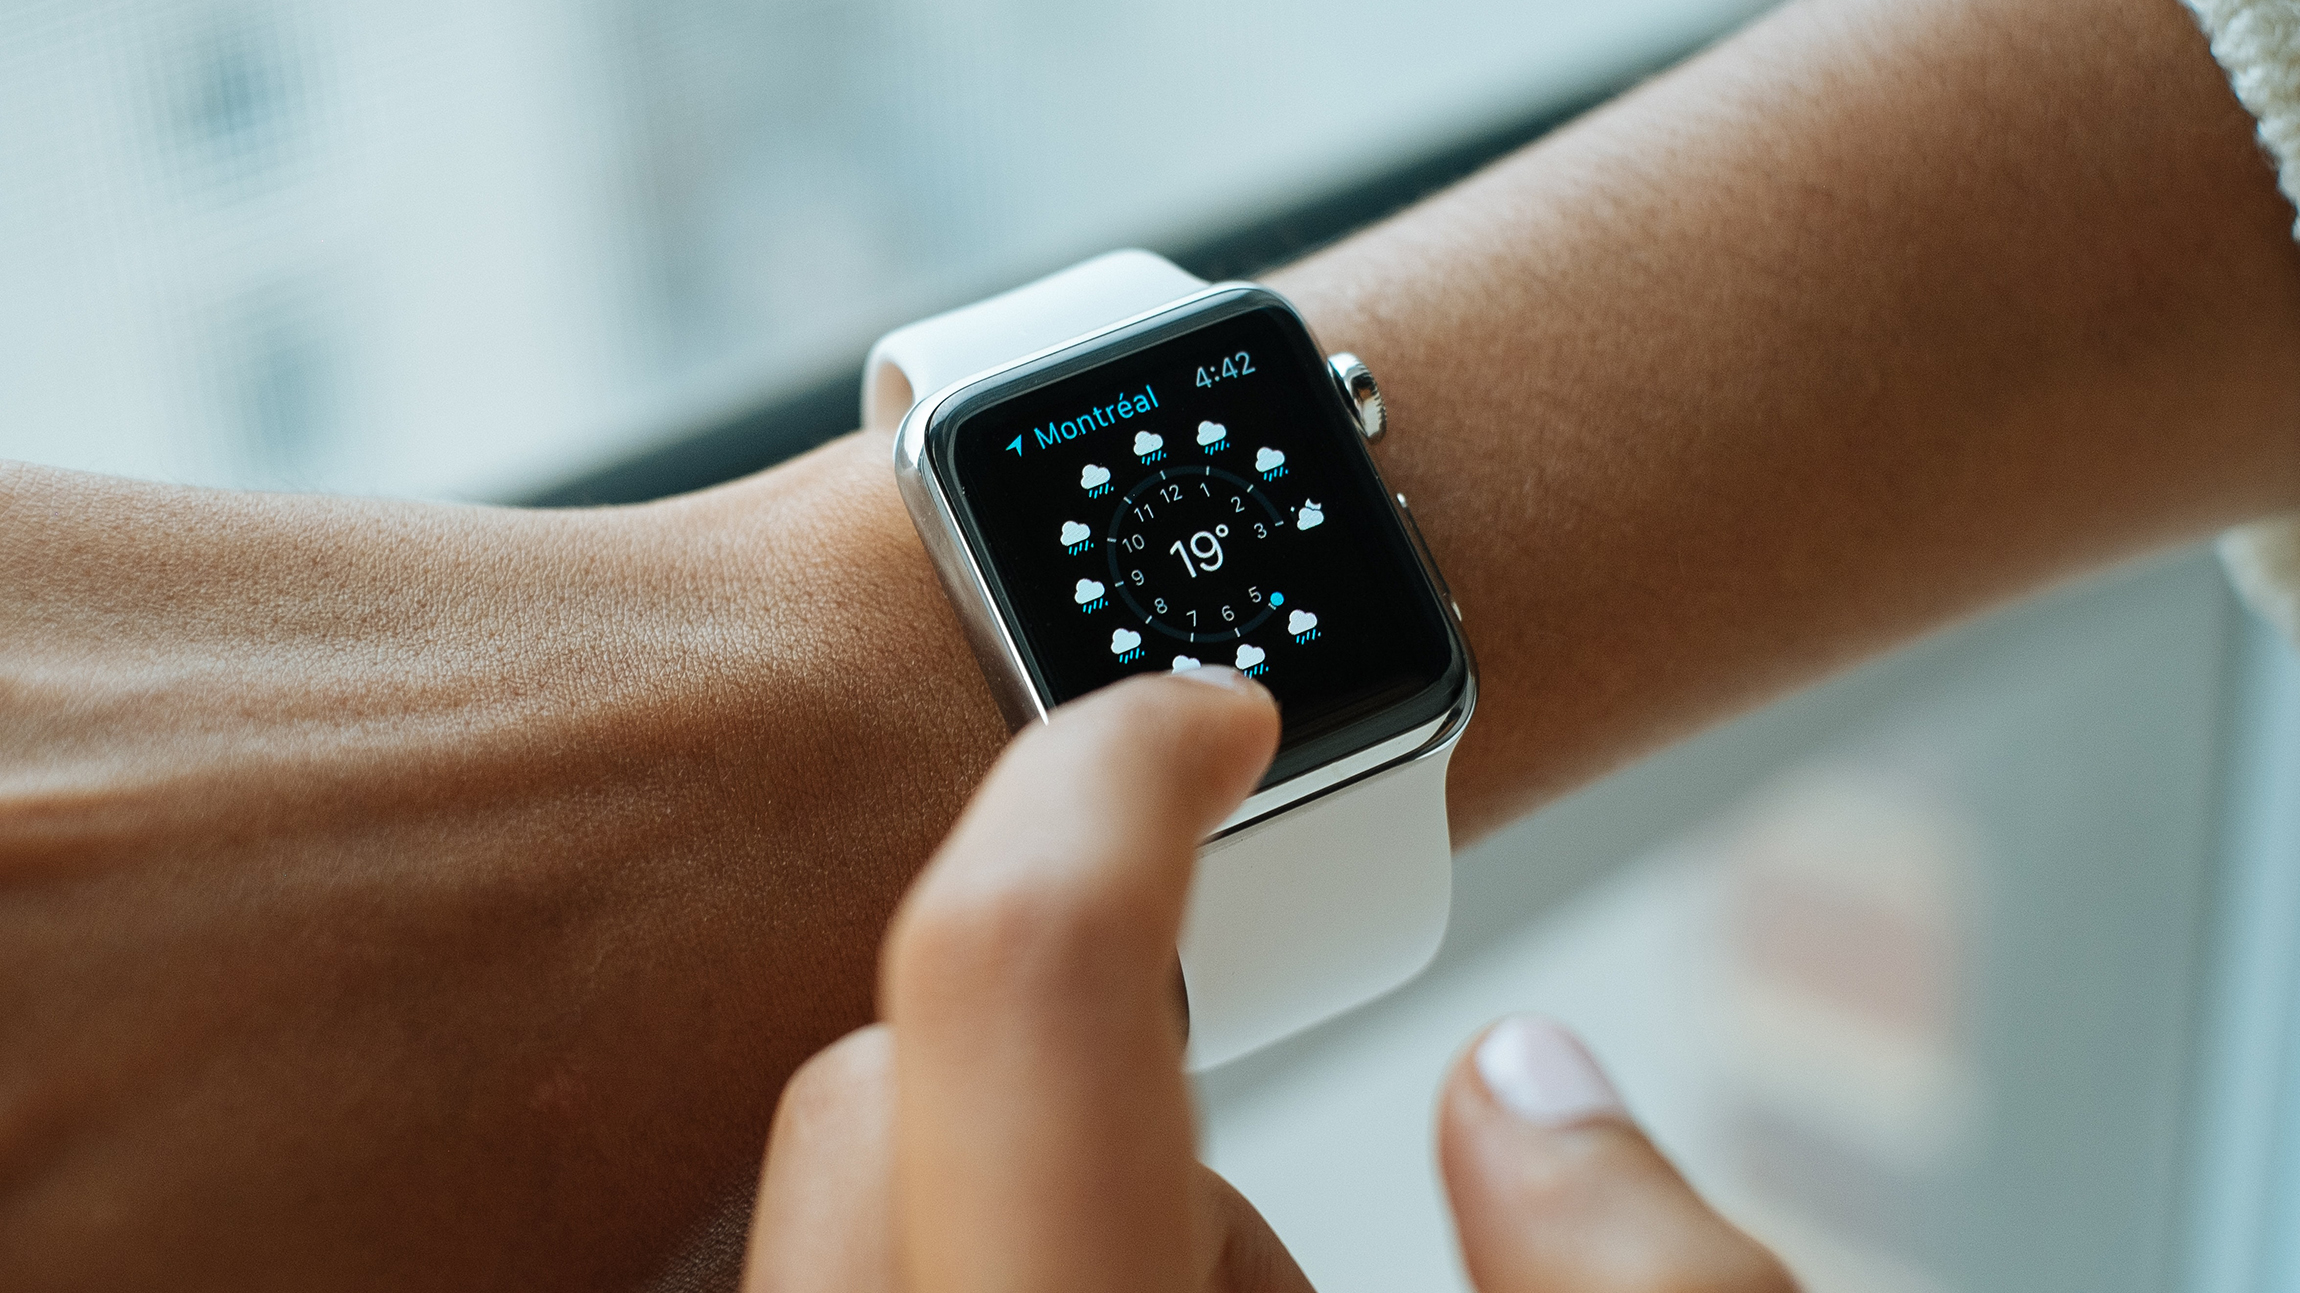 Facebook prepara relógio com Android para competir com Apple Watch | Gadgets – [Blog GigaOutlet]